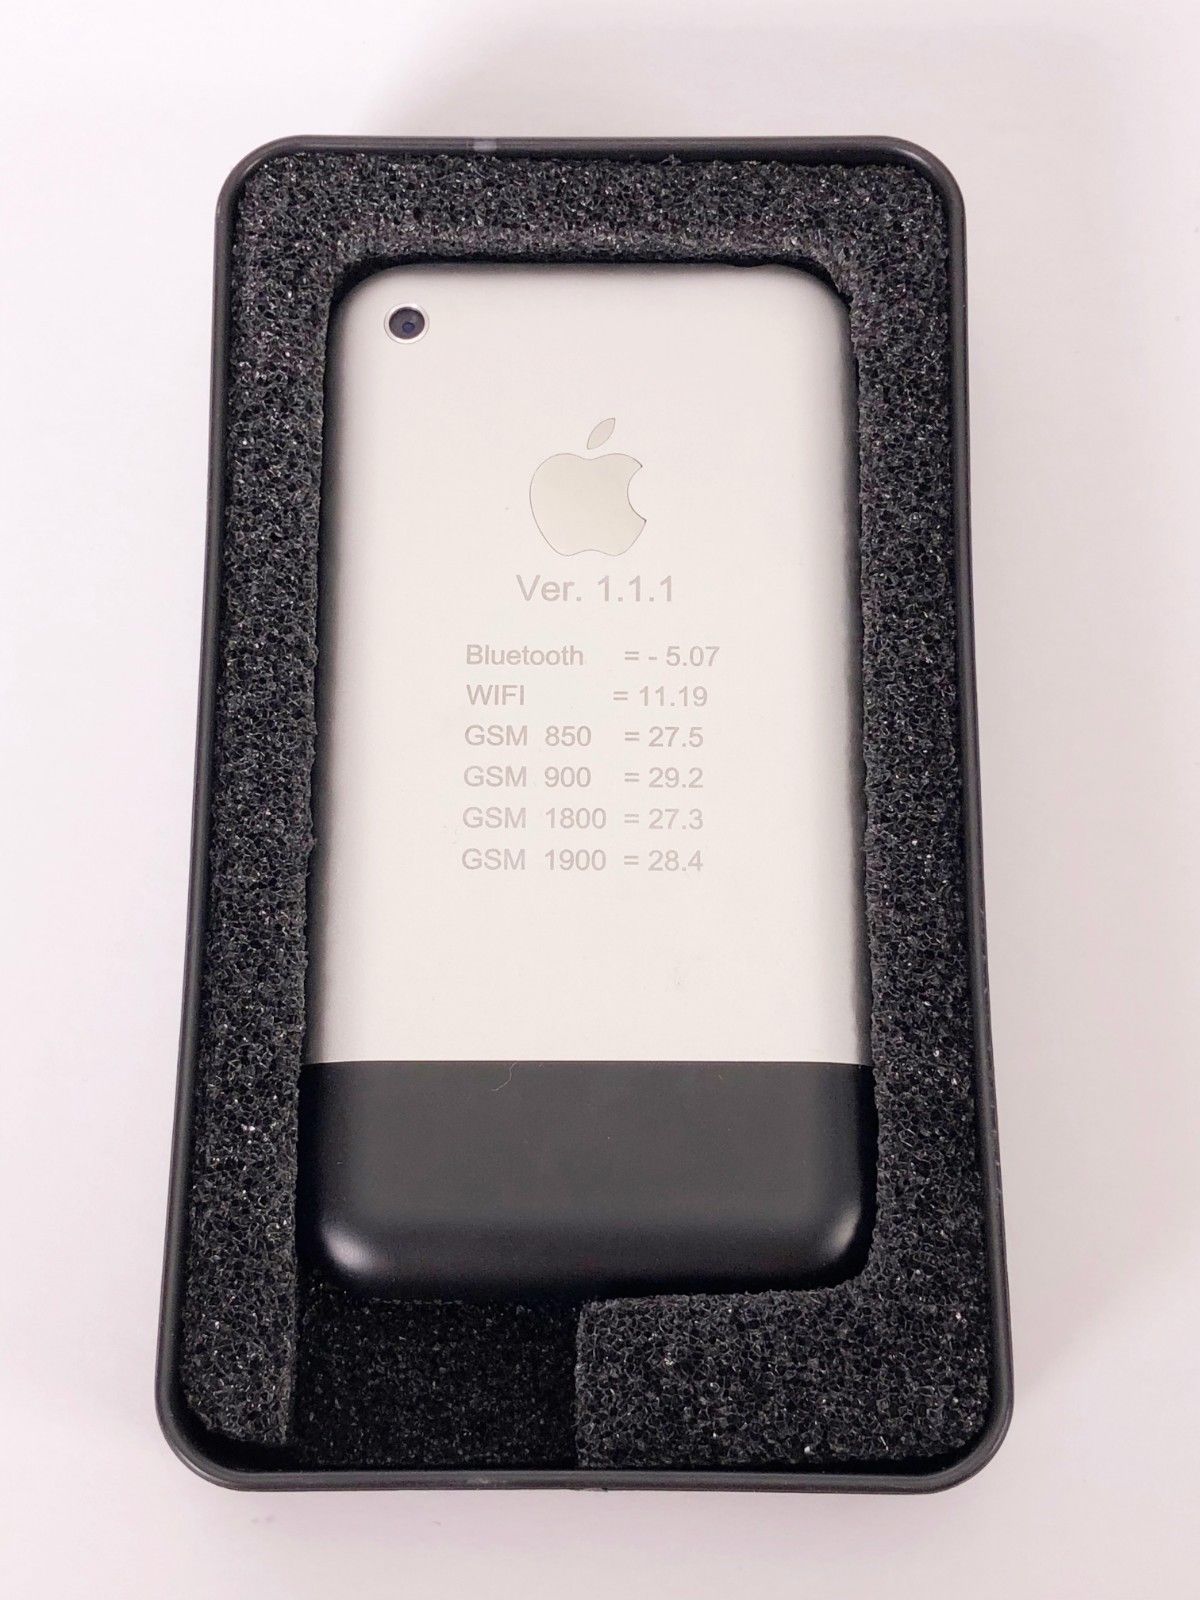 Prototipo del iPhone original en el año 2006